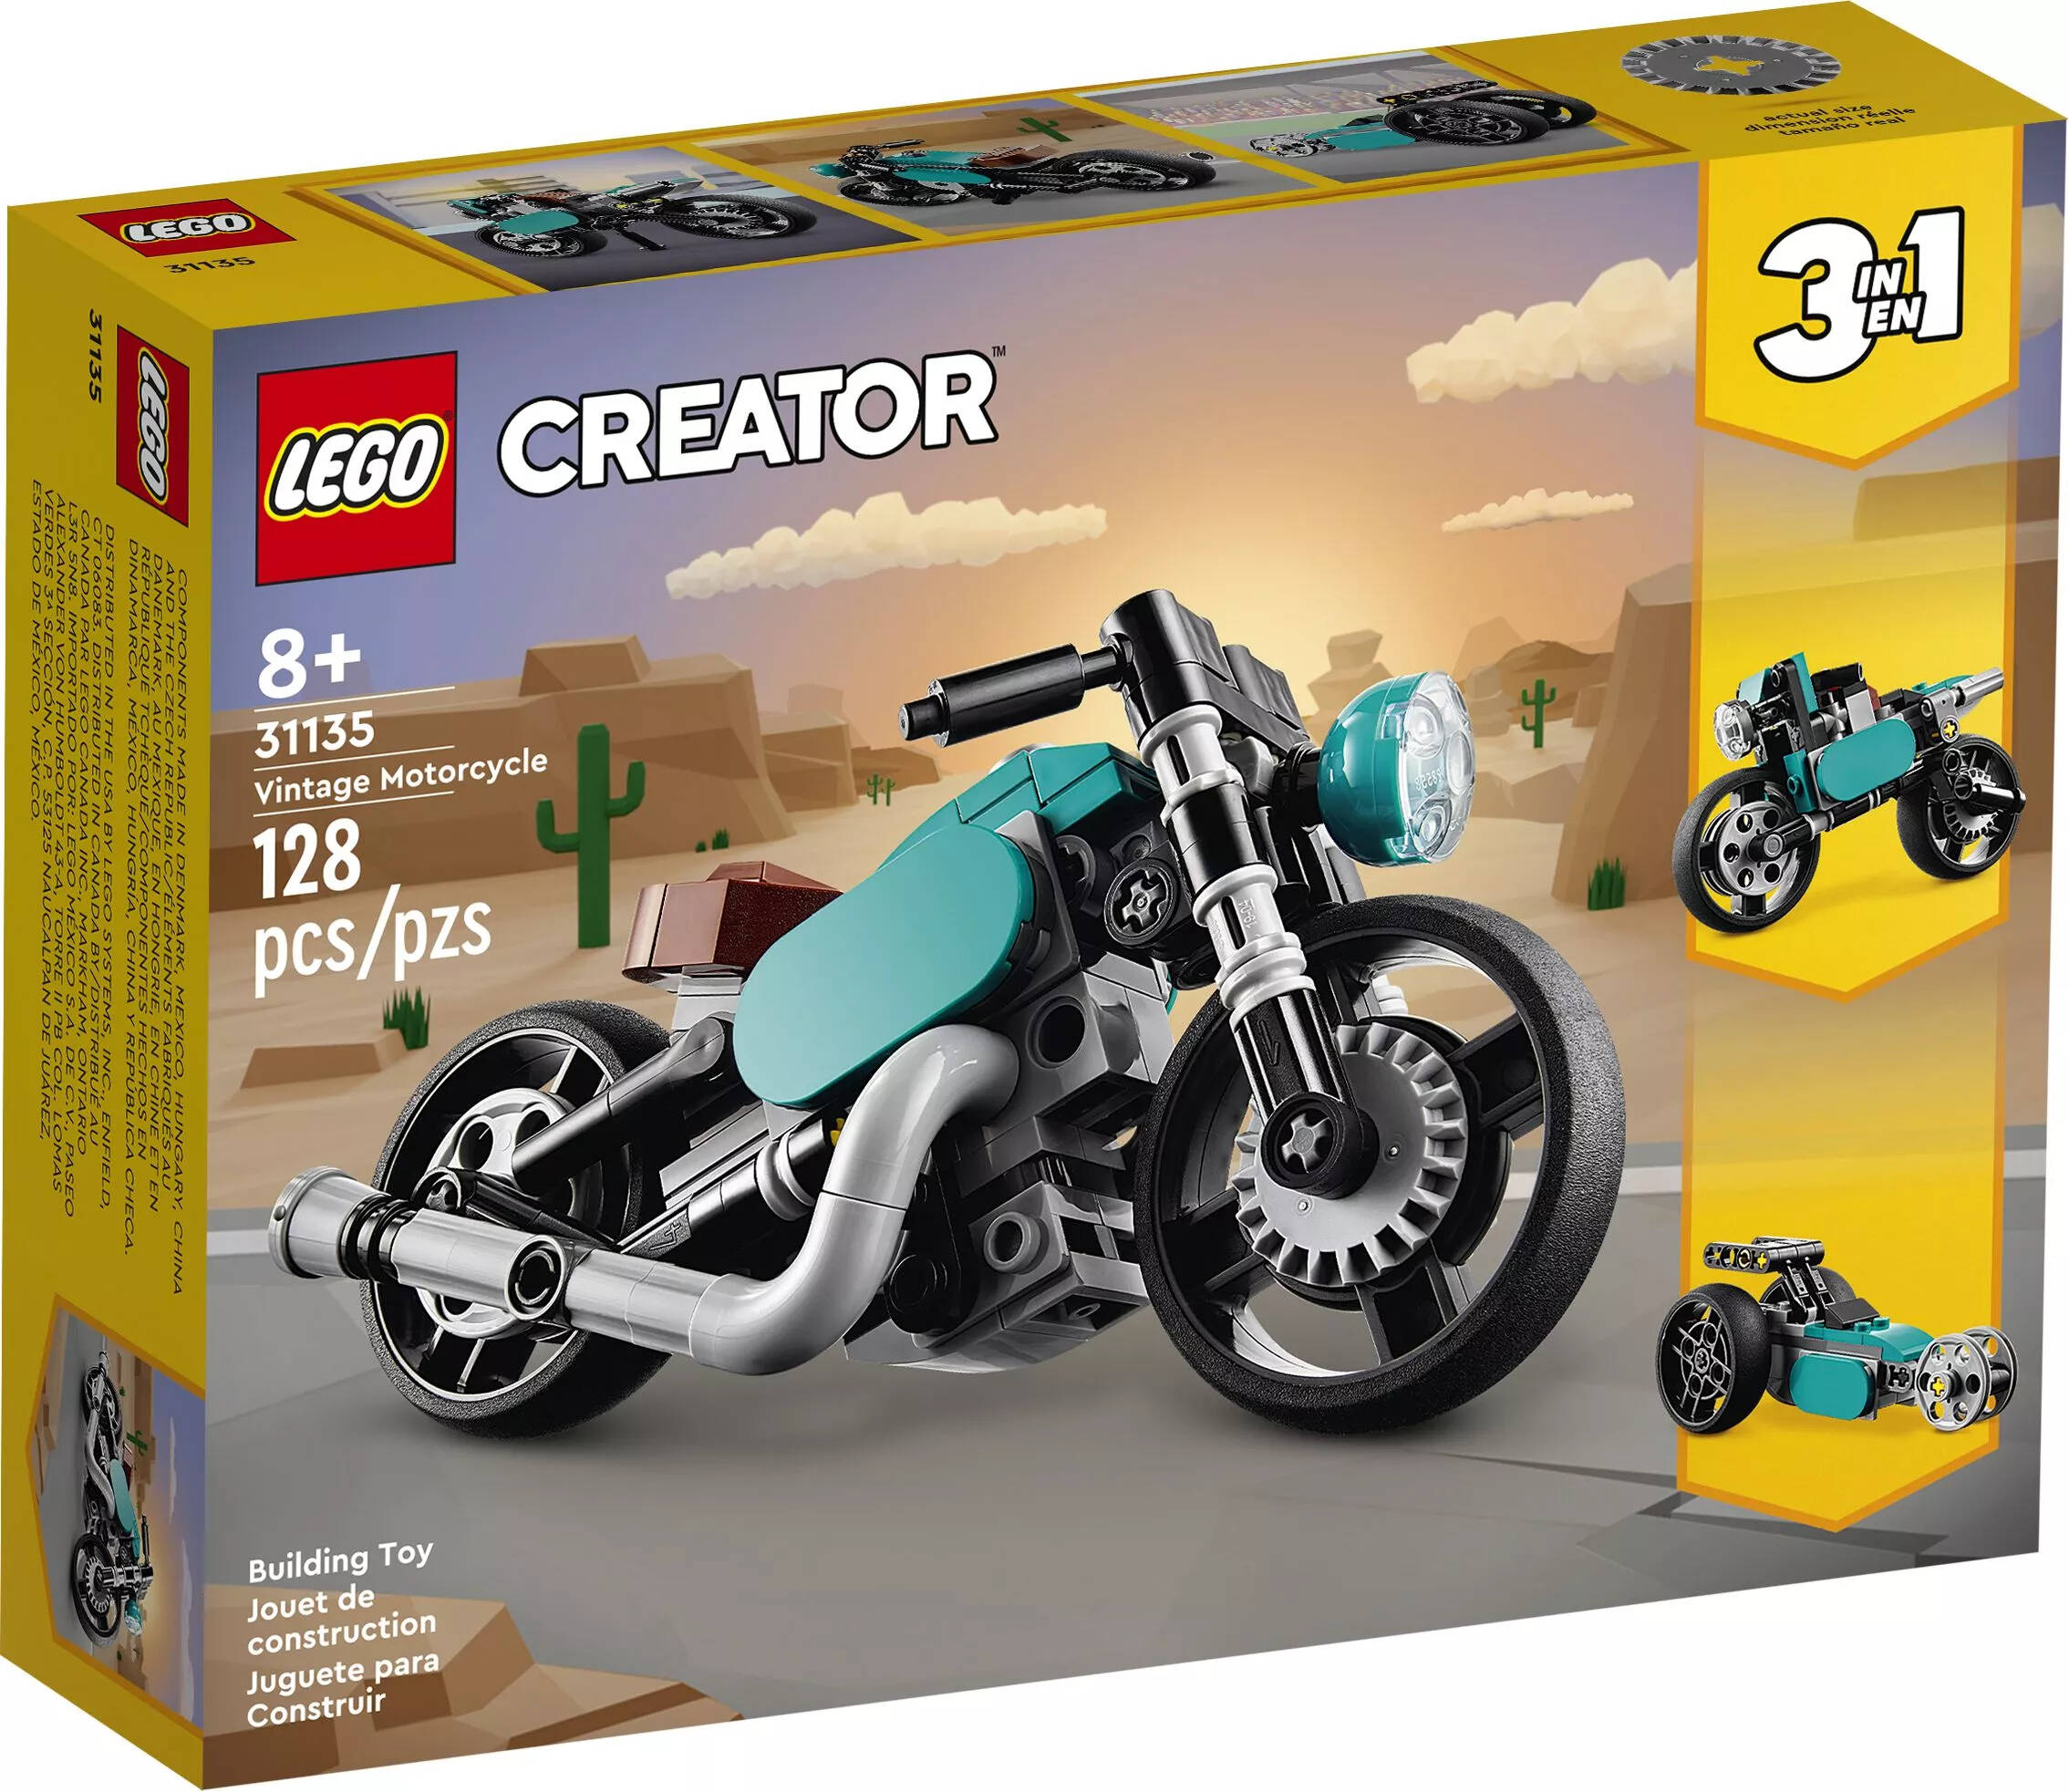 Конструктор LEGO Creator 31135 Винтажный мотоцикл, 128 дет конструктор lego creator винтажный мотоцикл 128 деталей 31135